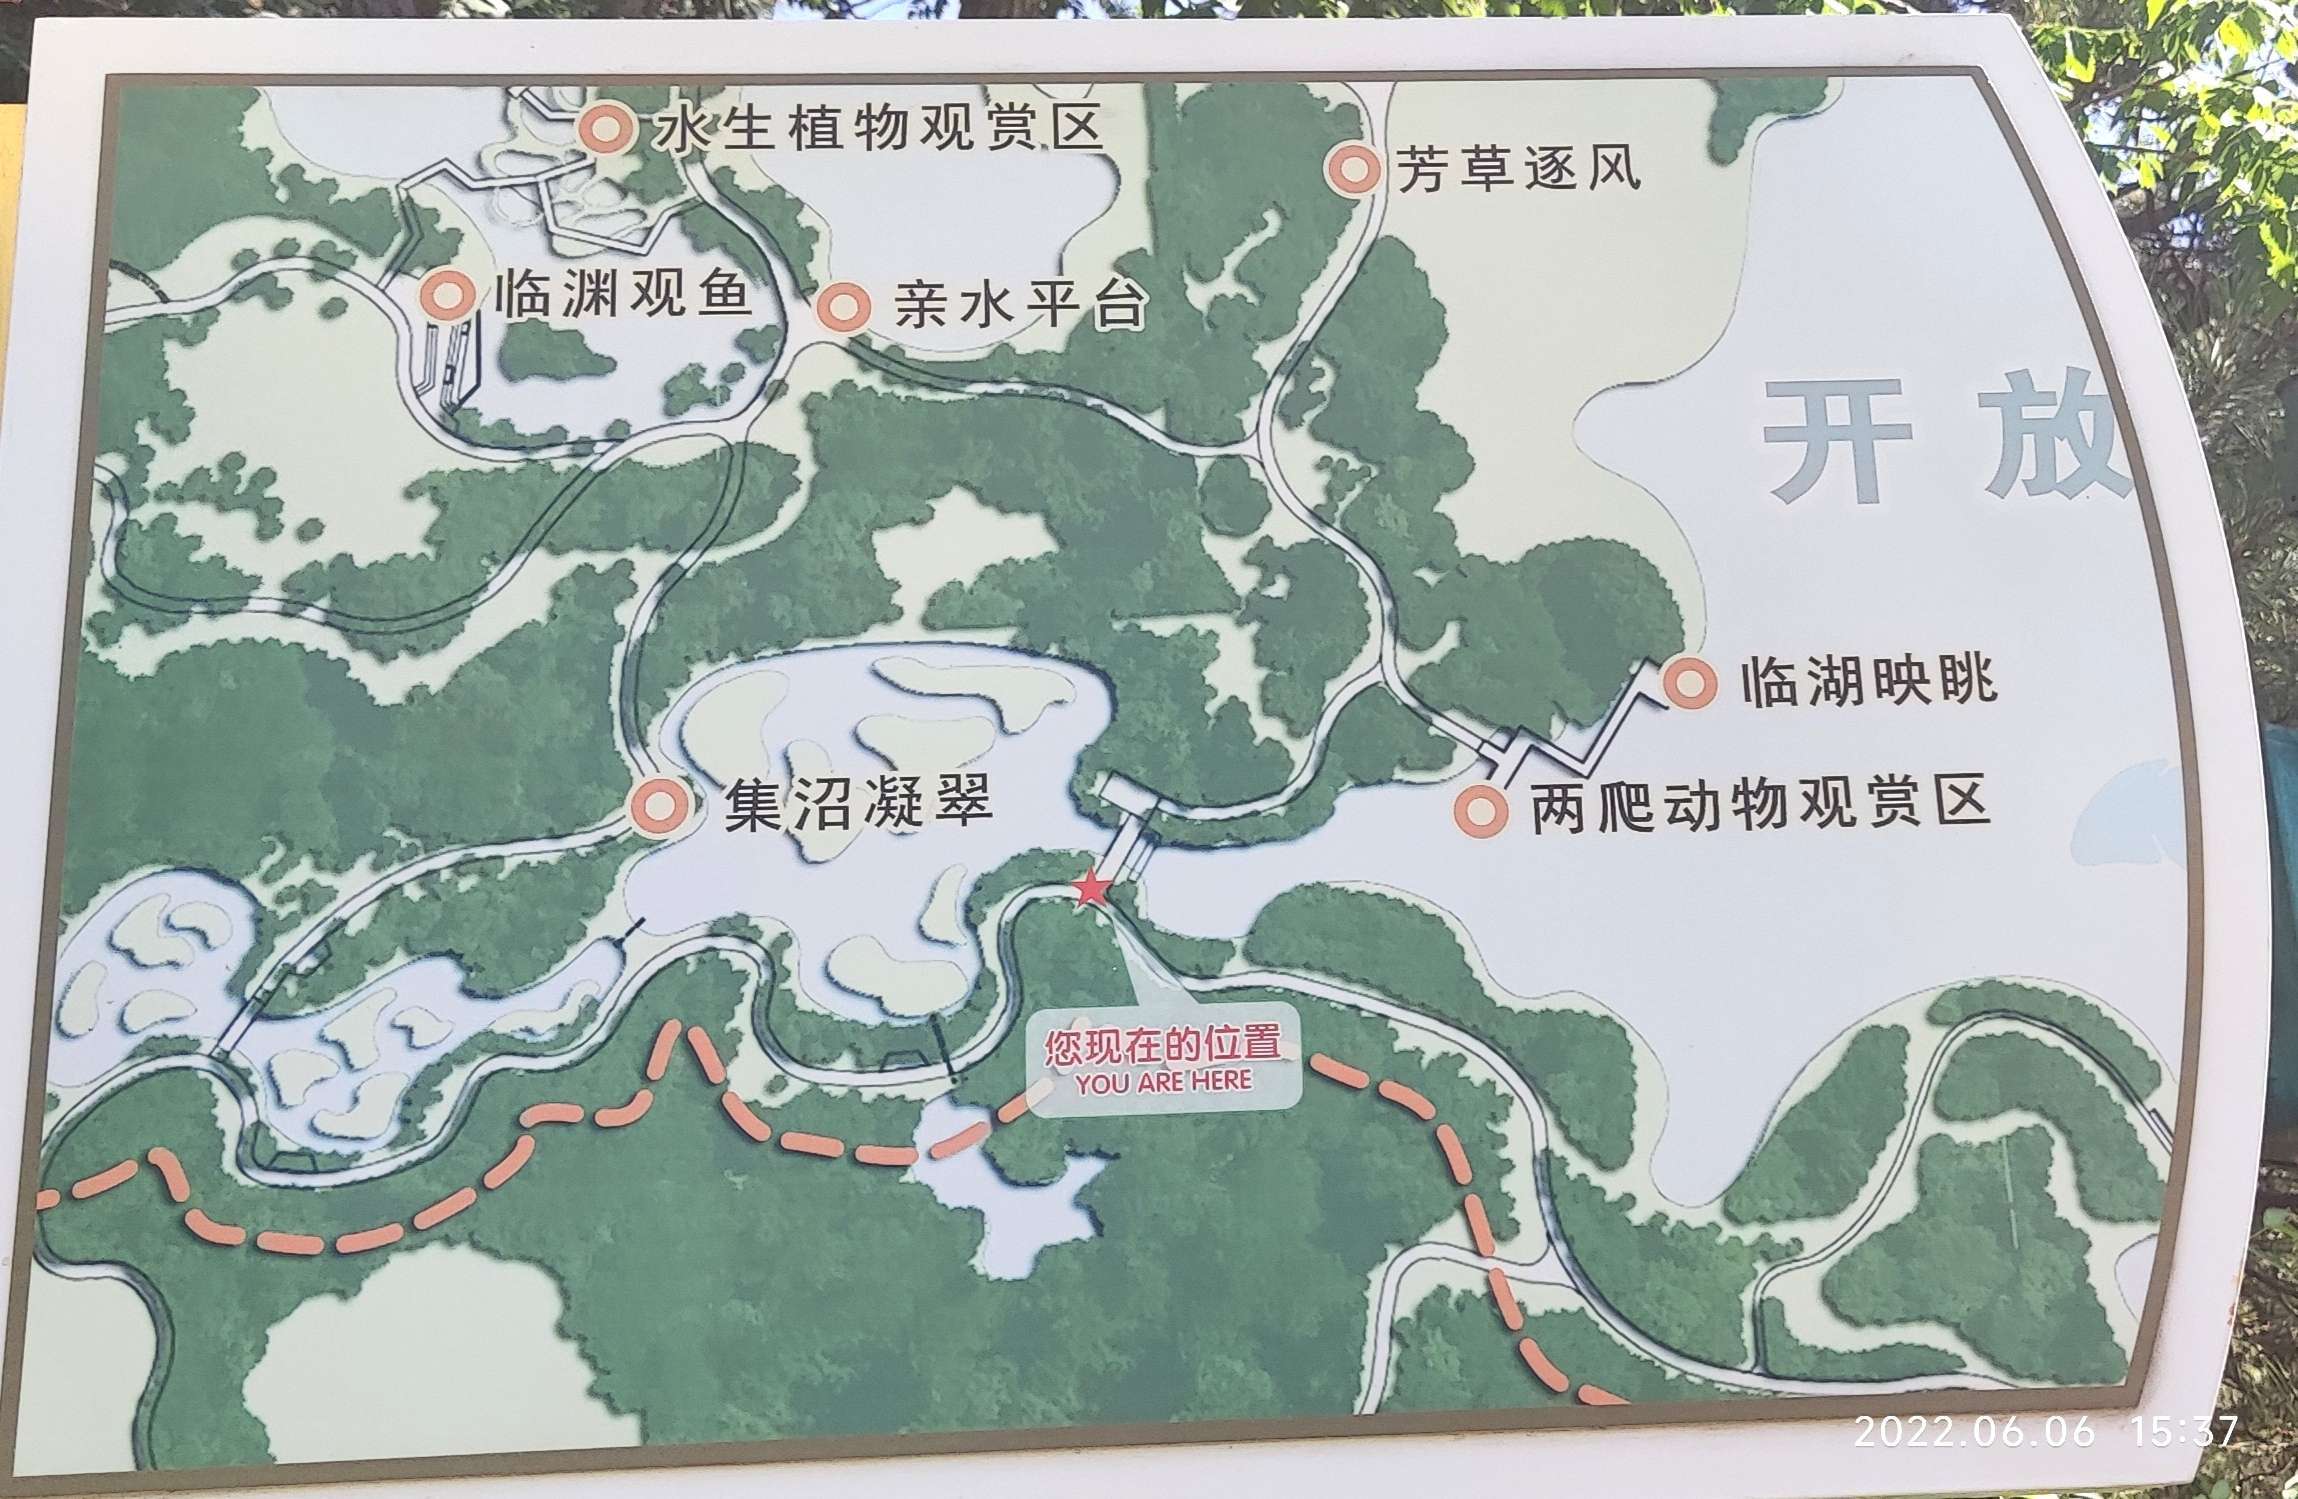 翠湖公园路线图图片